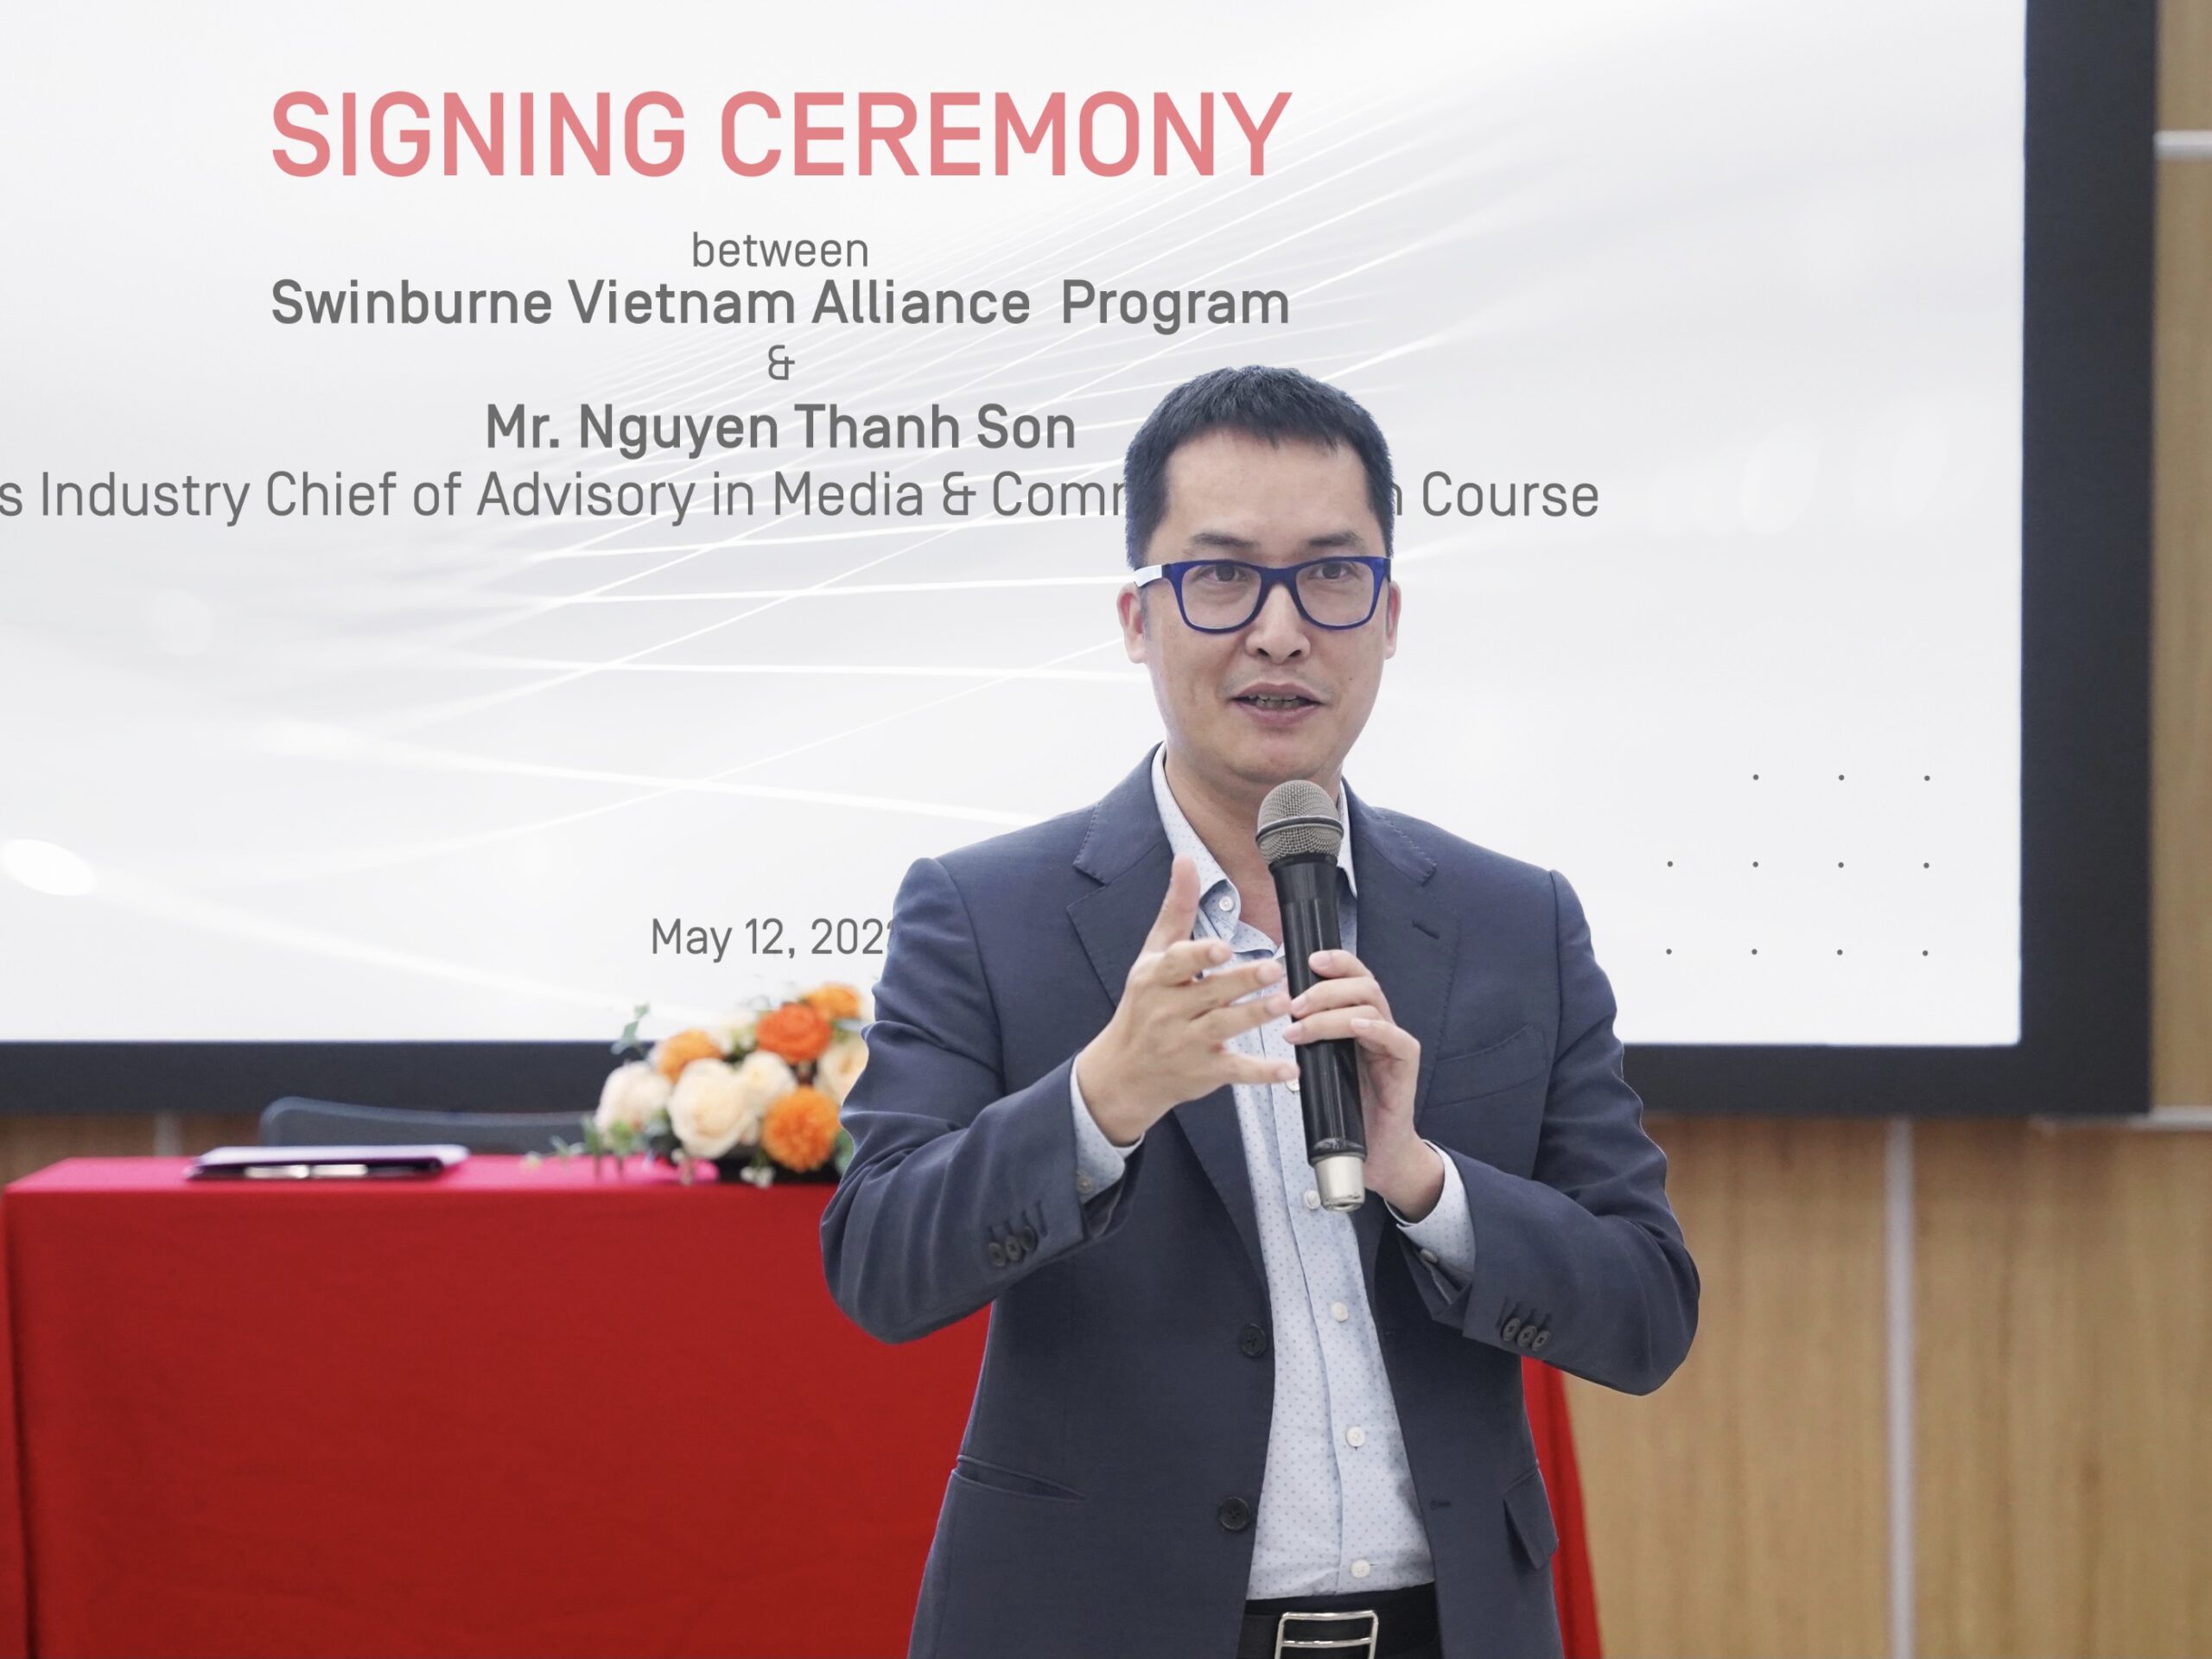 Ông Nguyễn Thanh Sơn trở thành chuyên gia cố vấn tại Swinburne Việt Nam